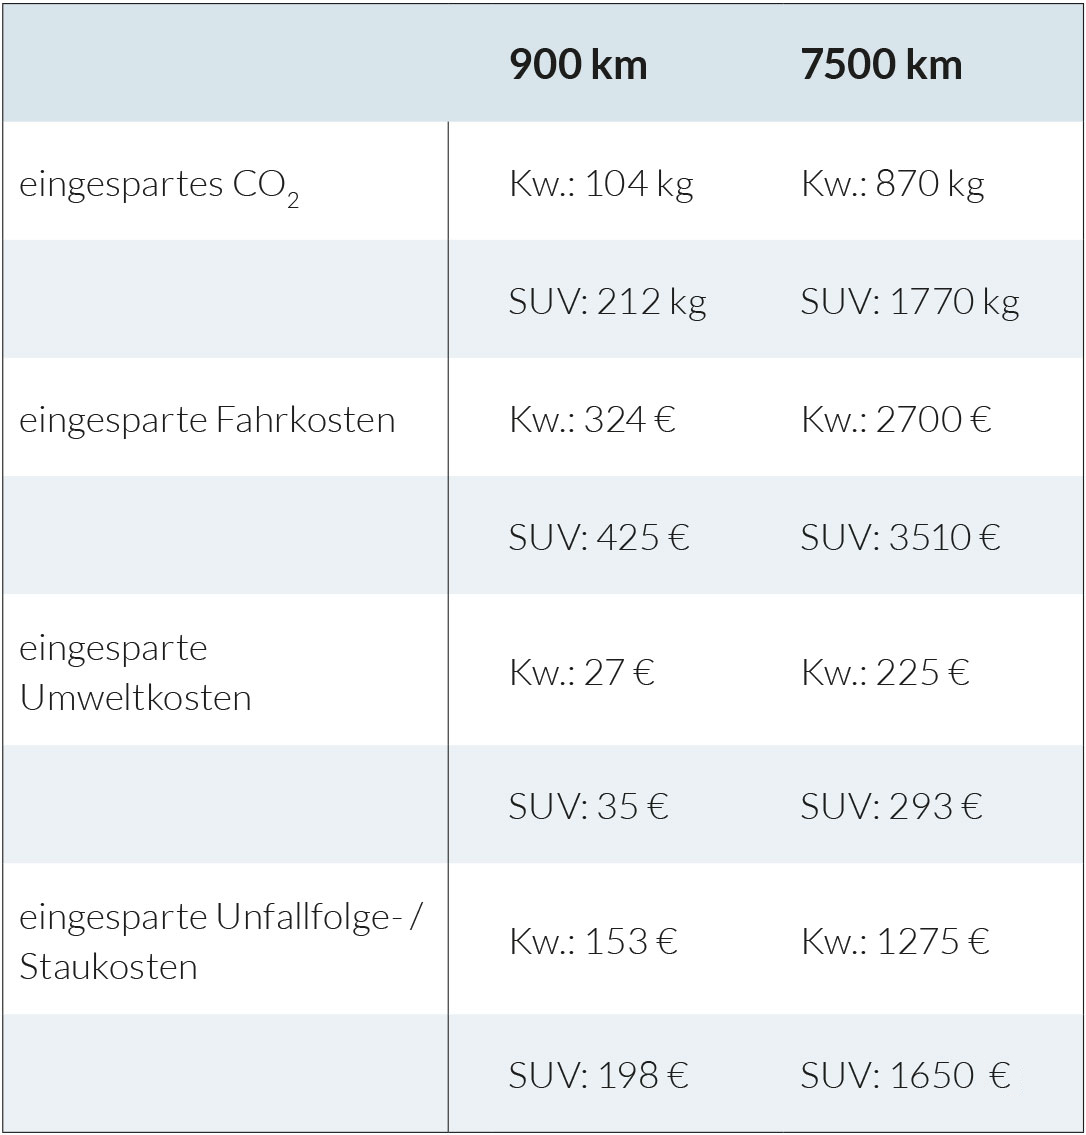 das immo büro | Makler Lübeck E-Bike Einsparung Umweltkosten